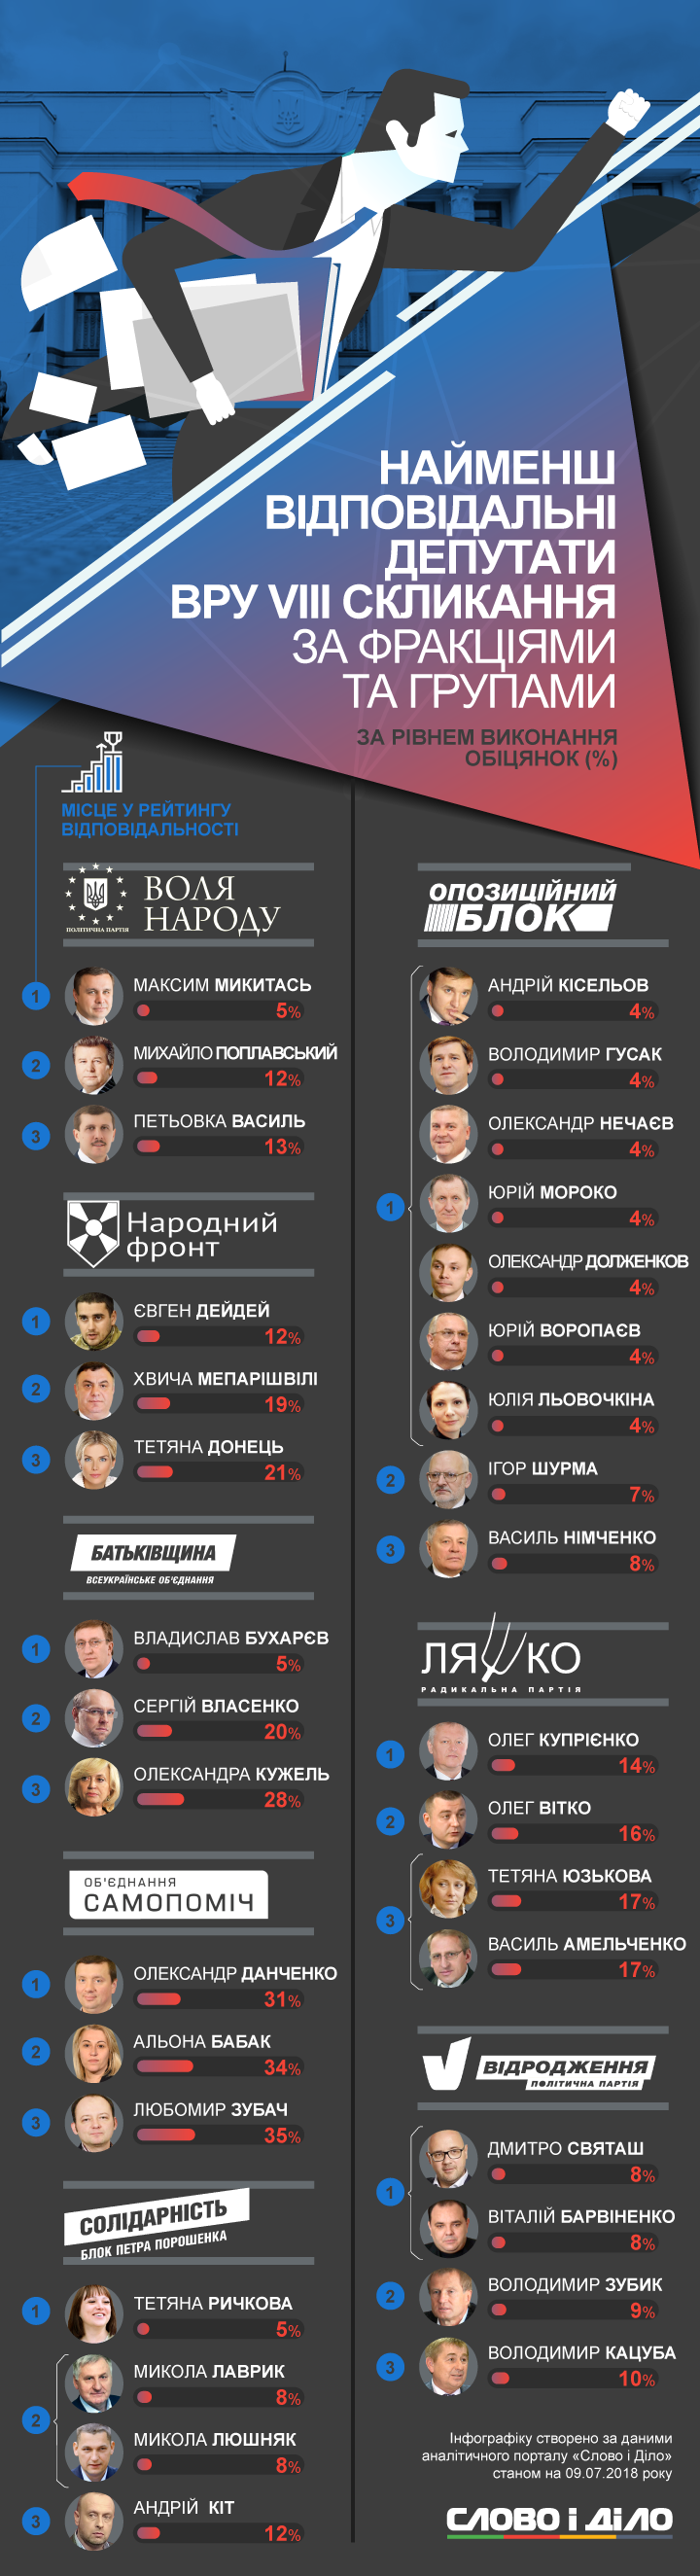 Восьме скликання Верховної Ради України пропрацювало вже чотири роки з п'яти. Сто відсотків своїх обіцянок не виконав ще жоден із нардепів. Показали лідерів та аутсайдерів у кожній фракції.